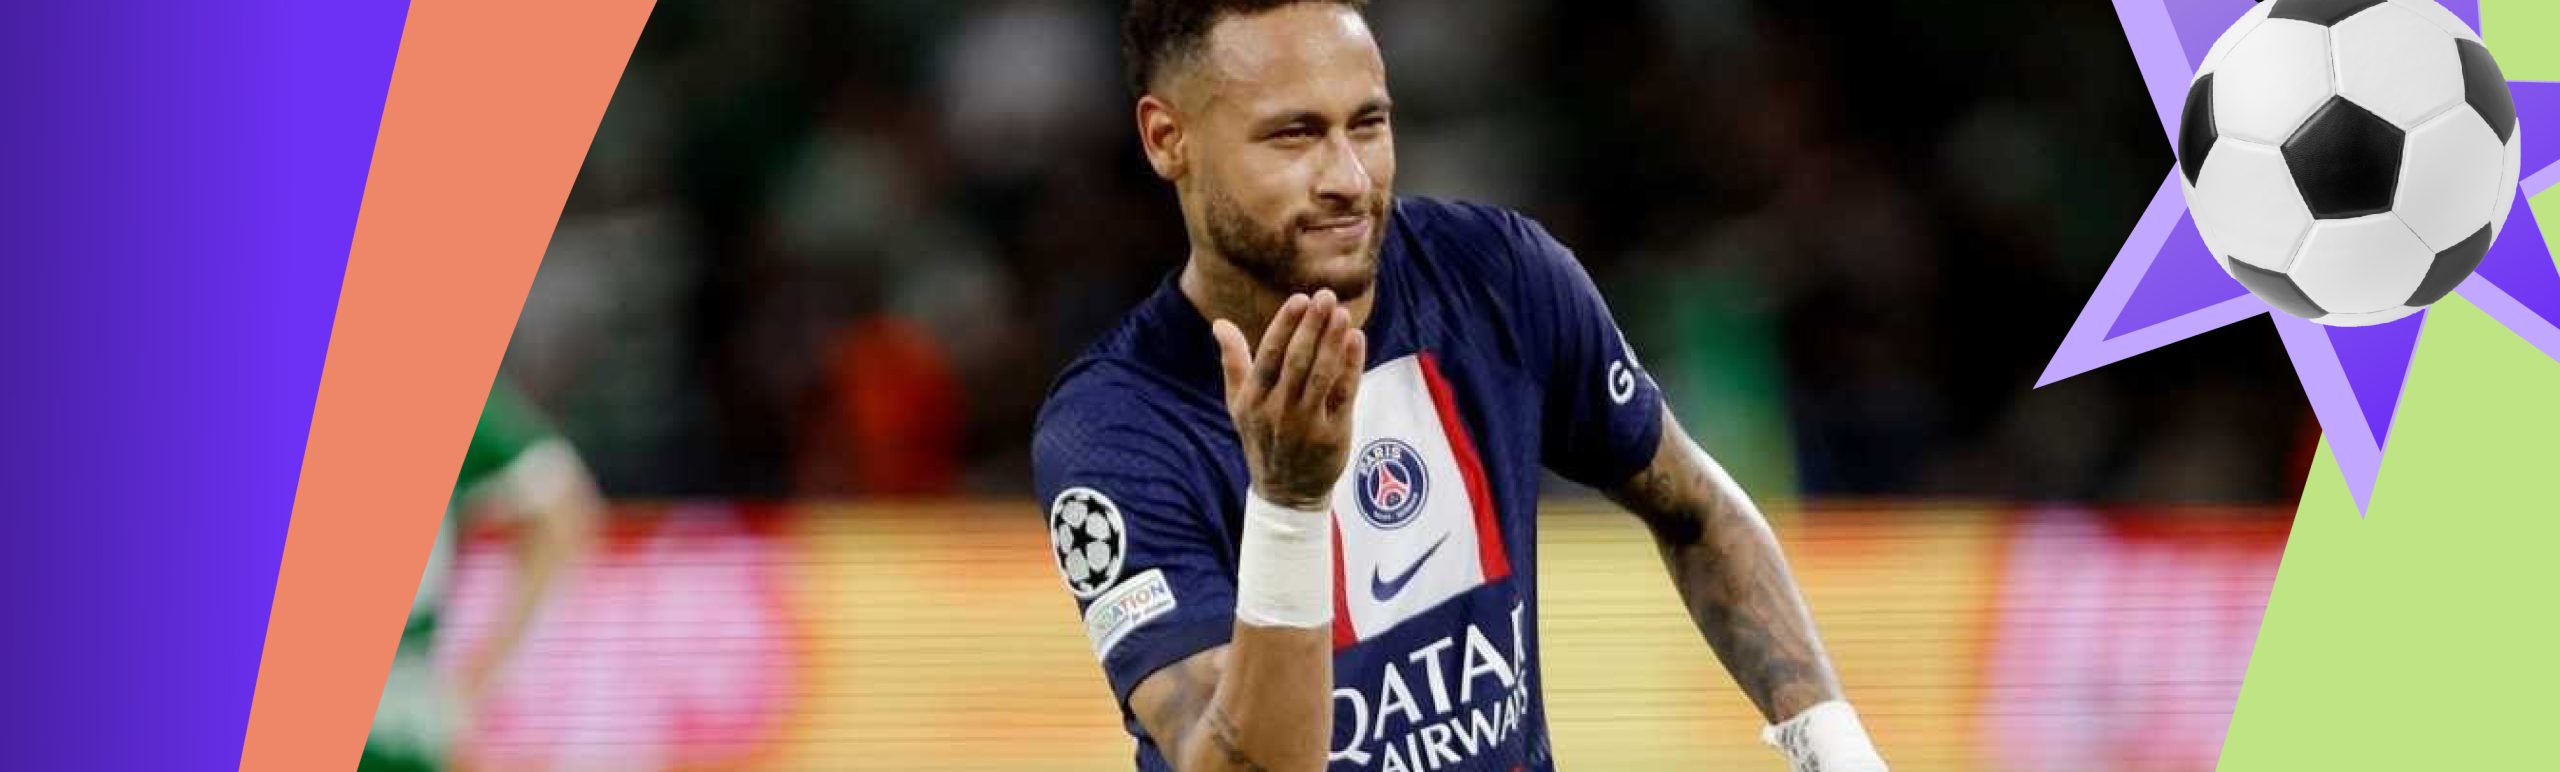 Neymar – Fransiyada avgust oyining eng yaxshi futbolchisi deb topildi «PSJ» forvardi Neymar avgust oyi yakunlariga ko‘ra, Fransiya chempionatining eng yaxshi futbolchisi deb topildi.